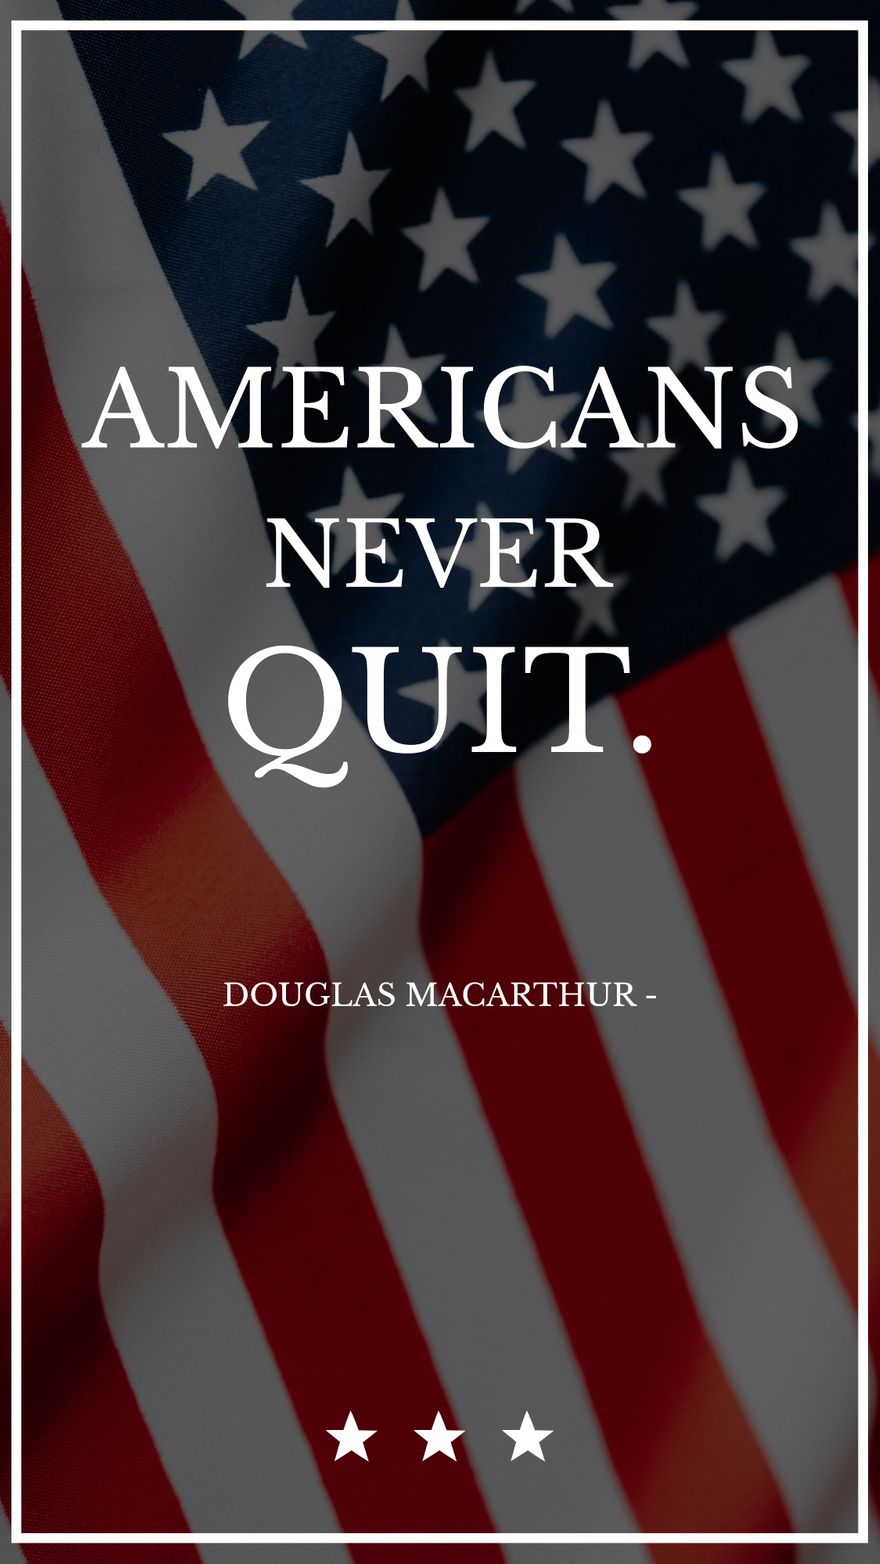 Free Douglas MacArthur - Americans never quit.